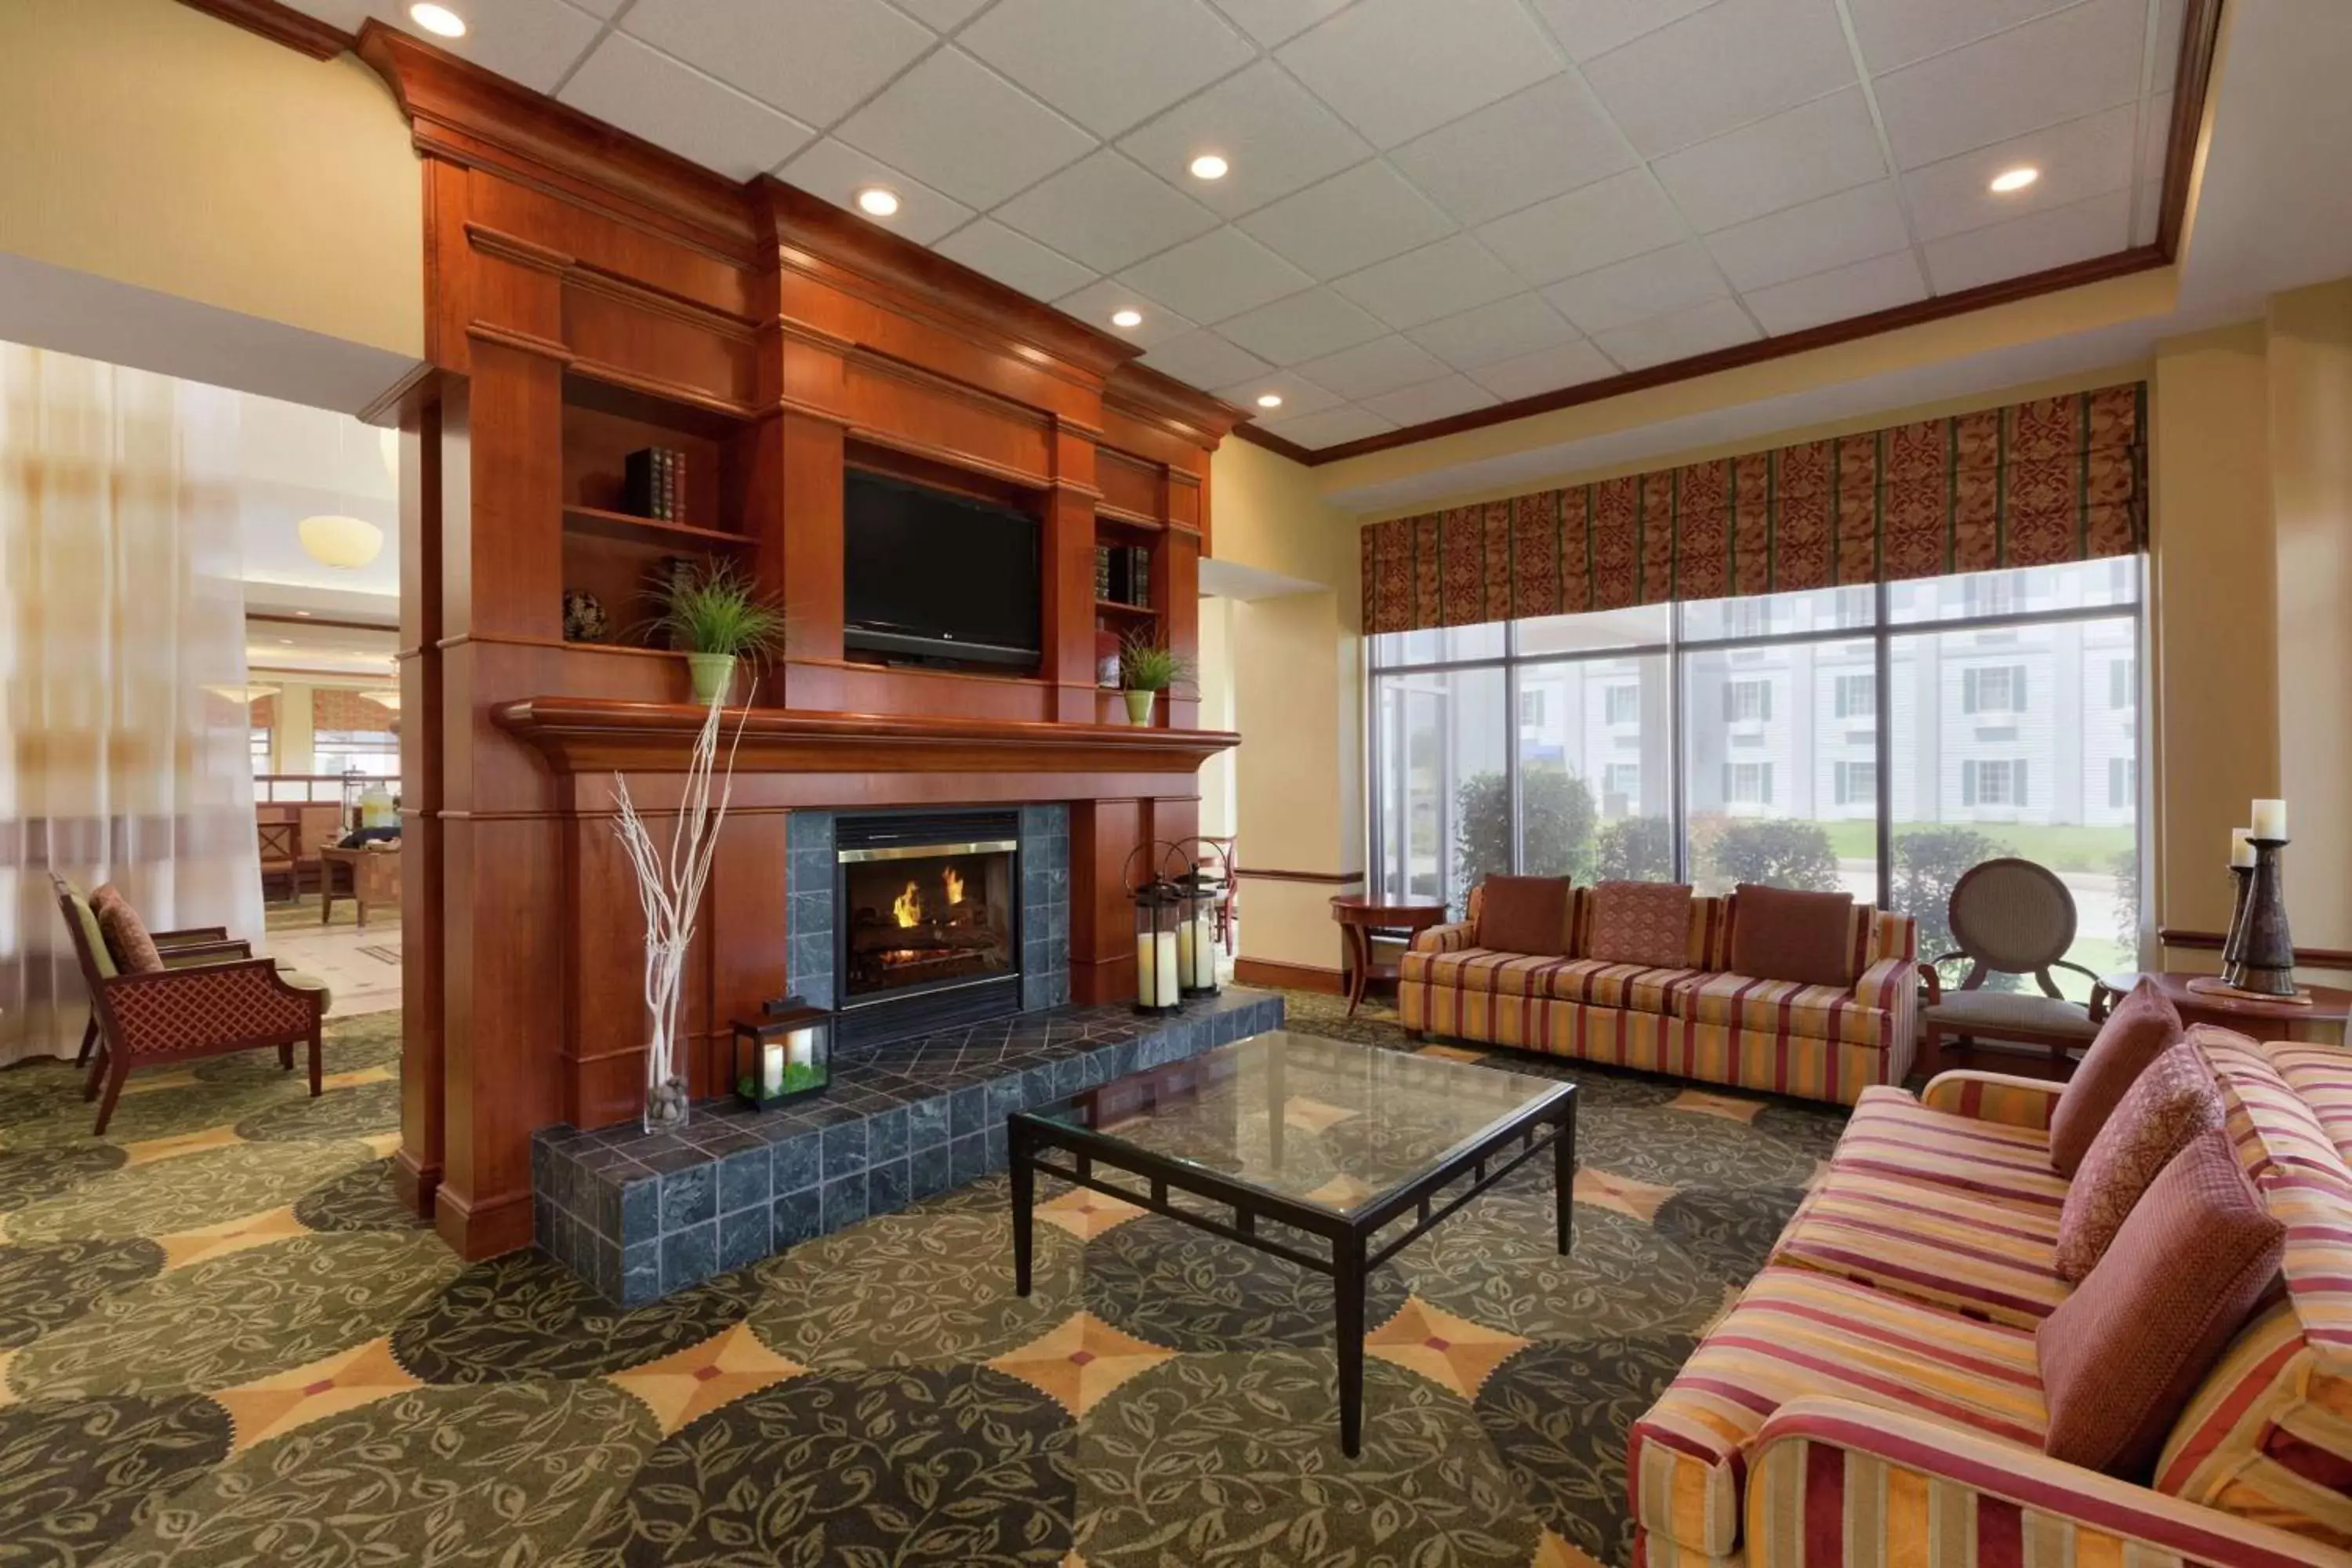 Lobby or reception in Hilton Garden Inn Shreveport